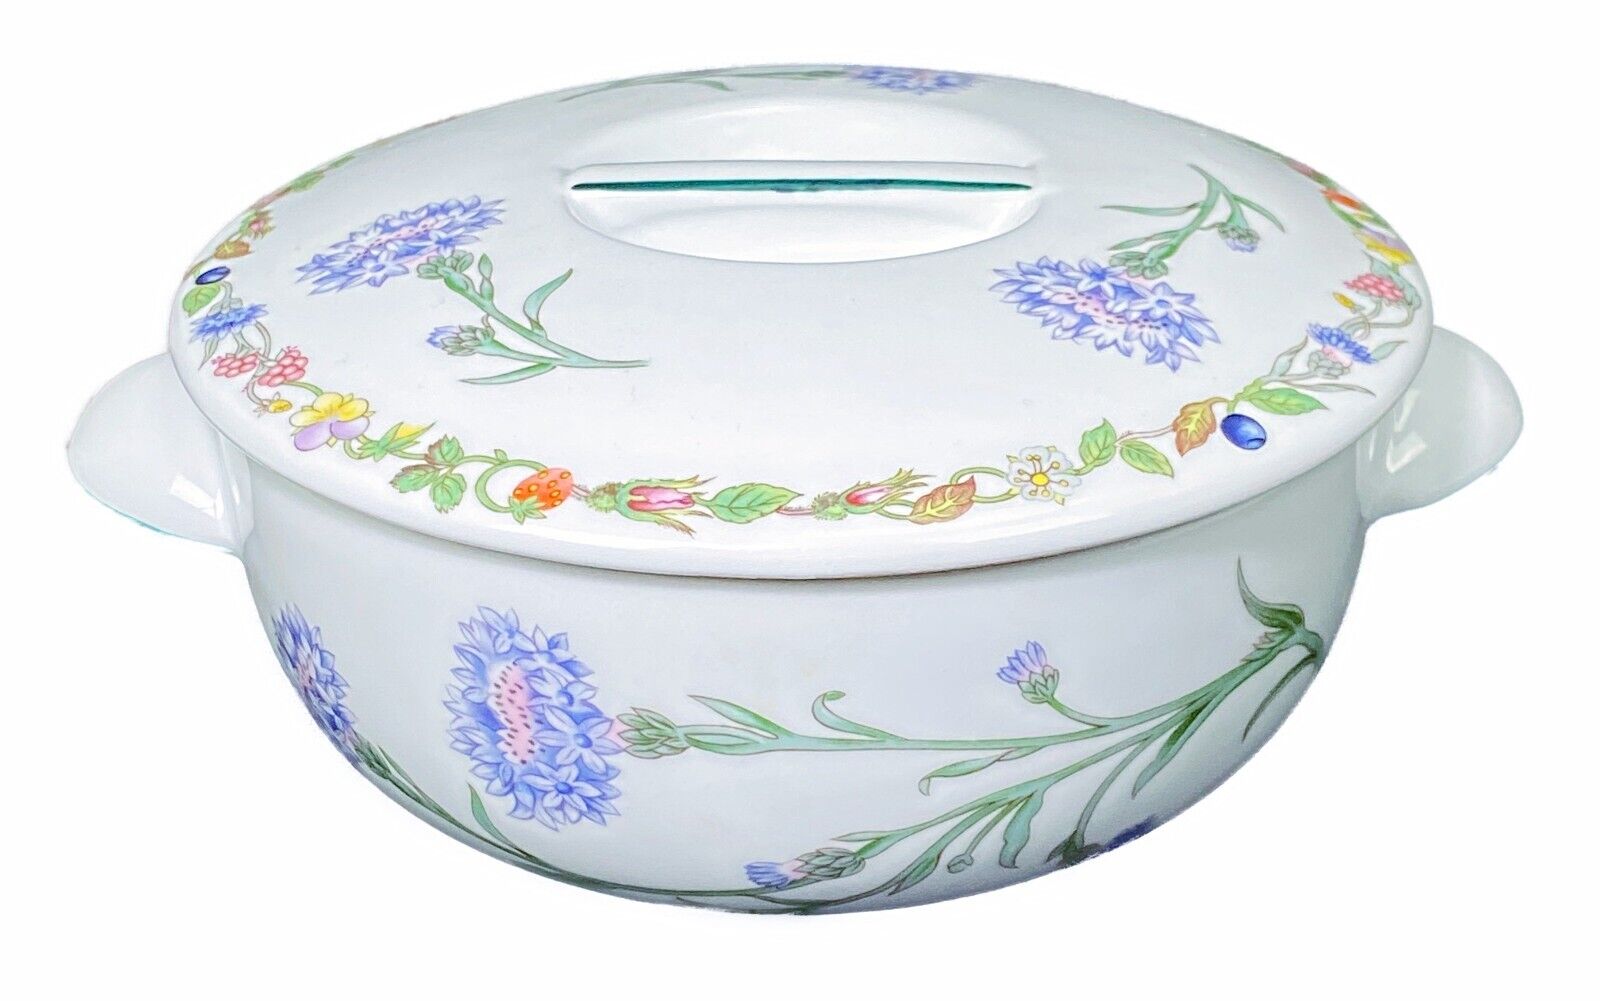 Aynsley Lyndhurst Somerset Covered Casserole Dish Porcelain Serving Dish Floral